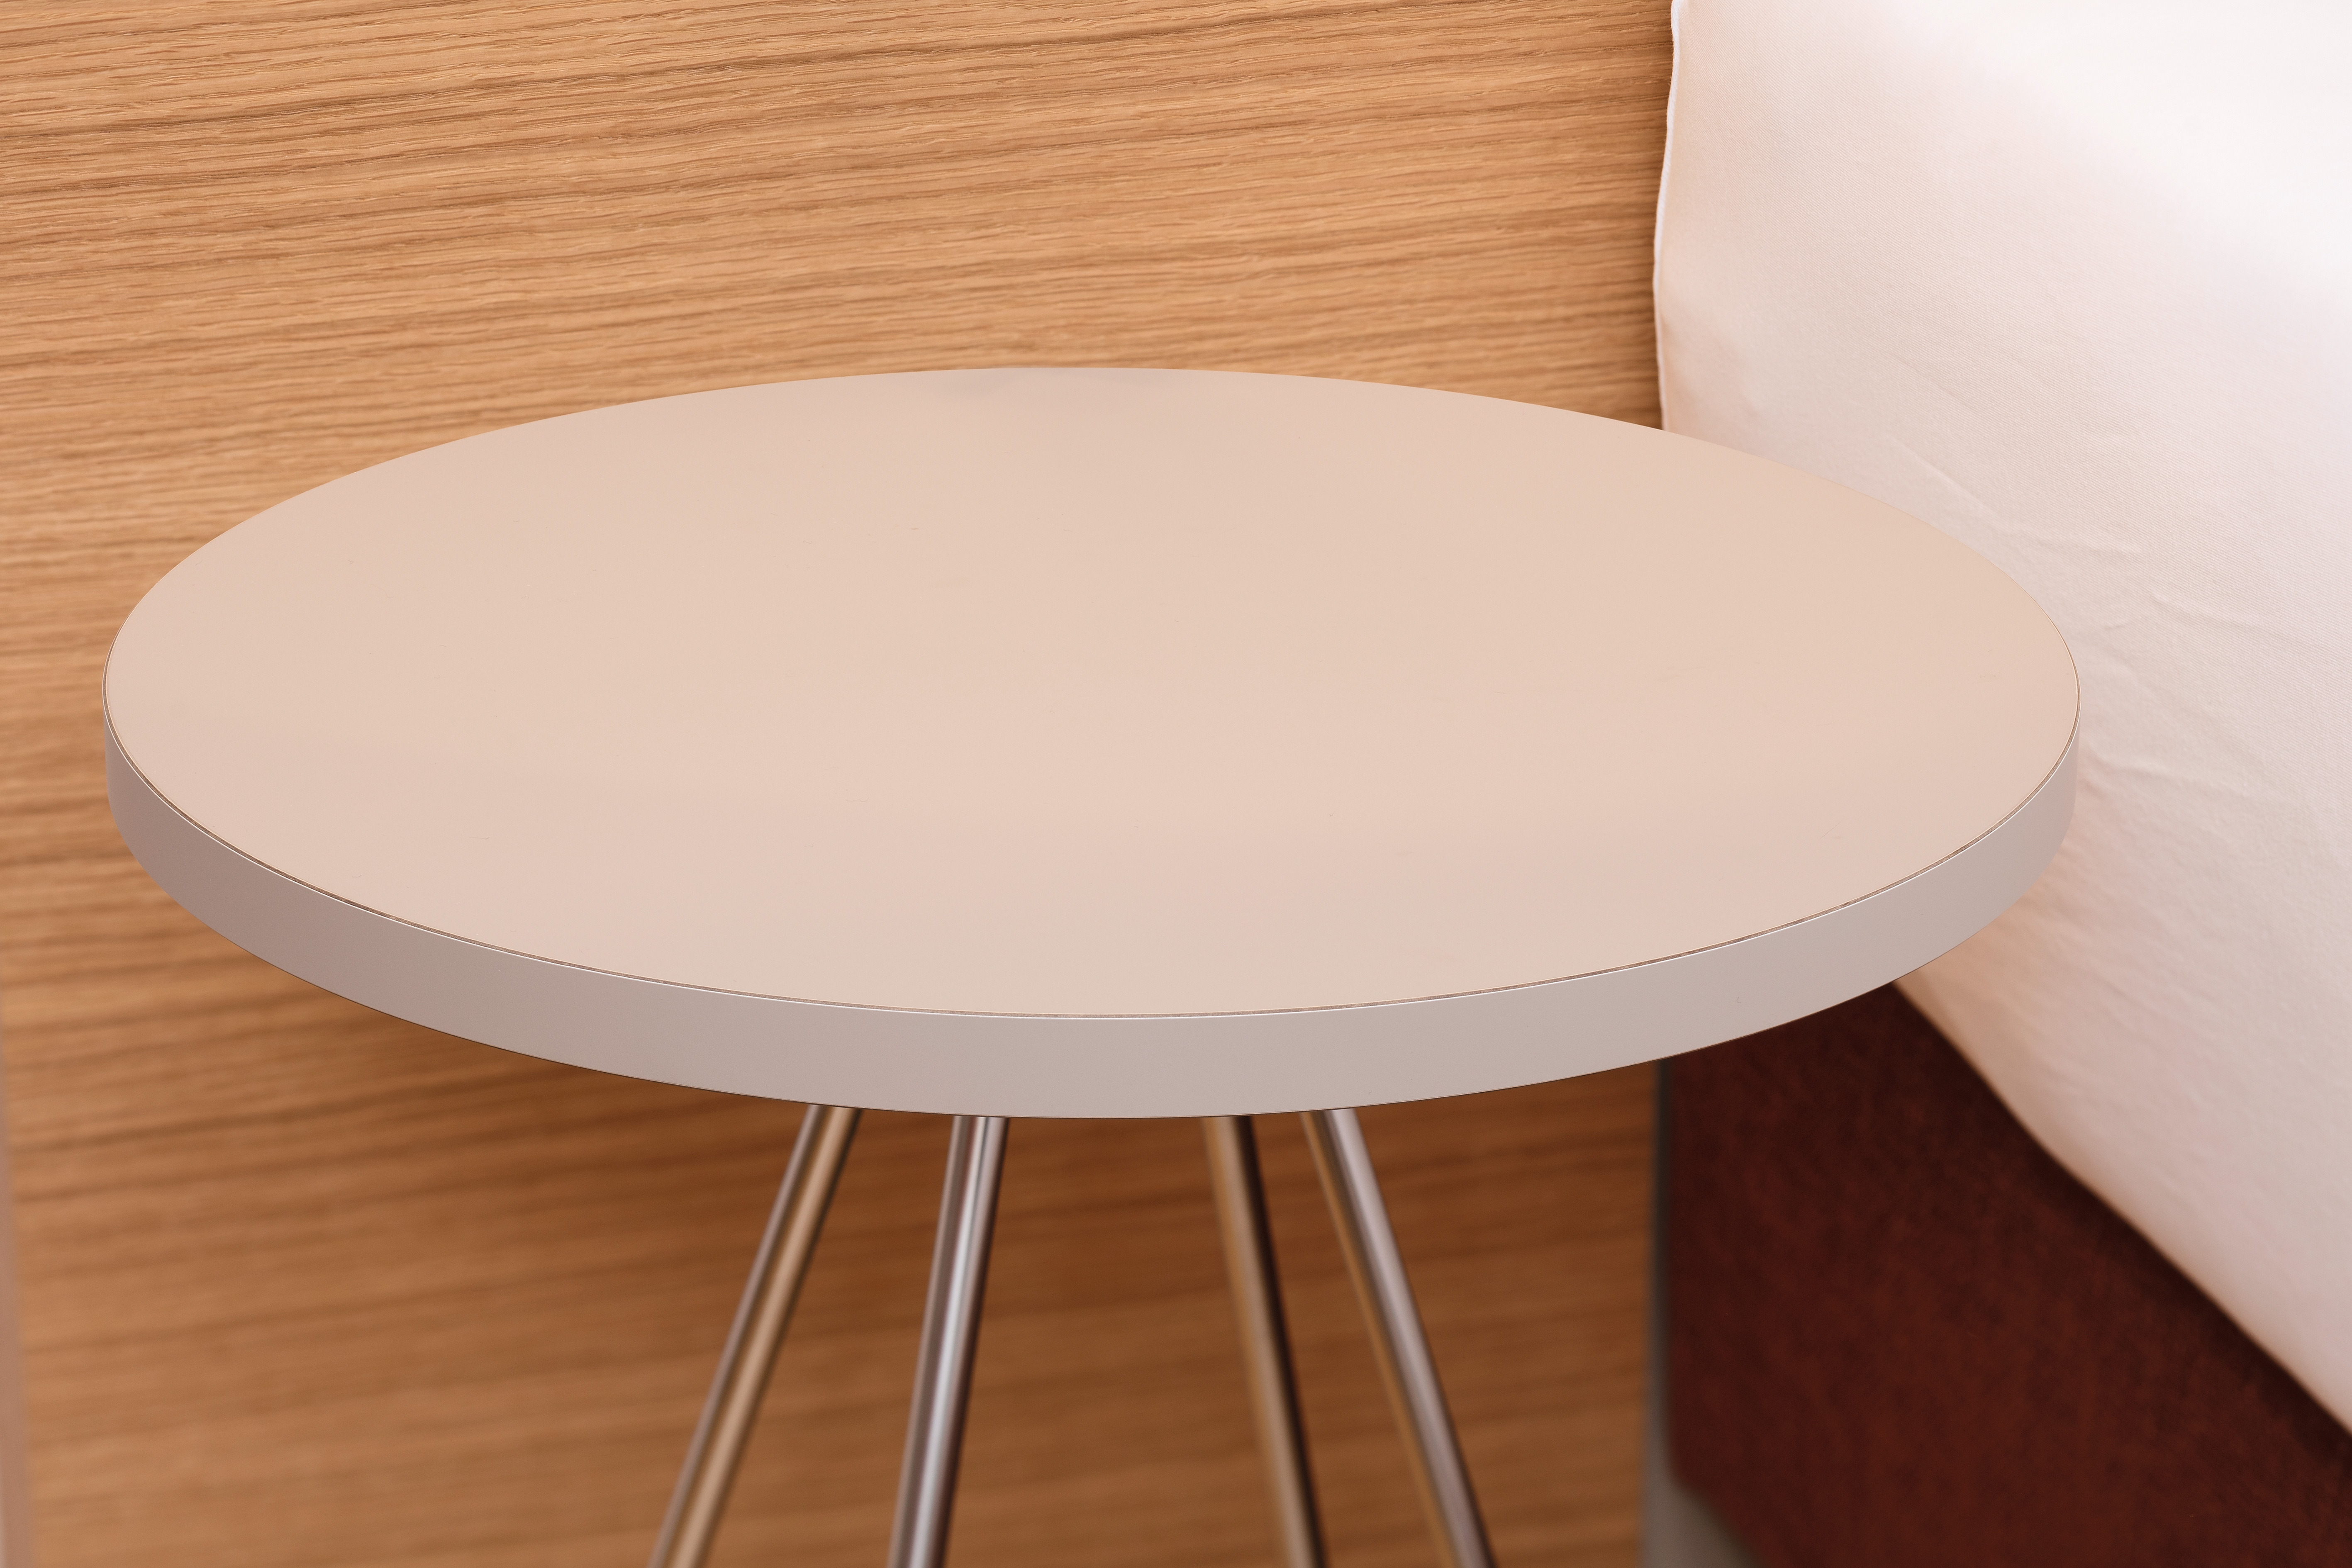 Повърхността на масата е изработена от здрав ламинат PerfectSense Topmatt.